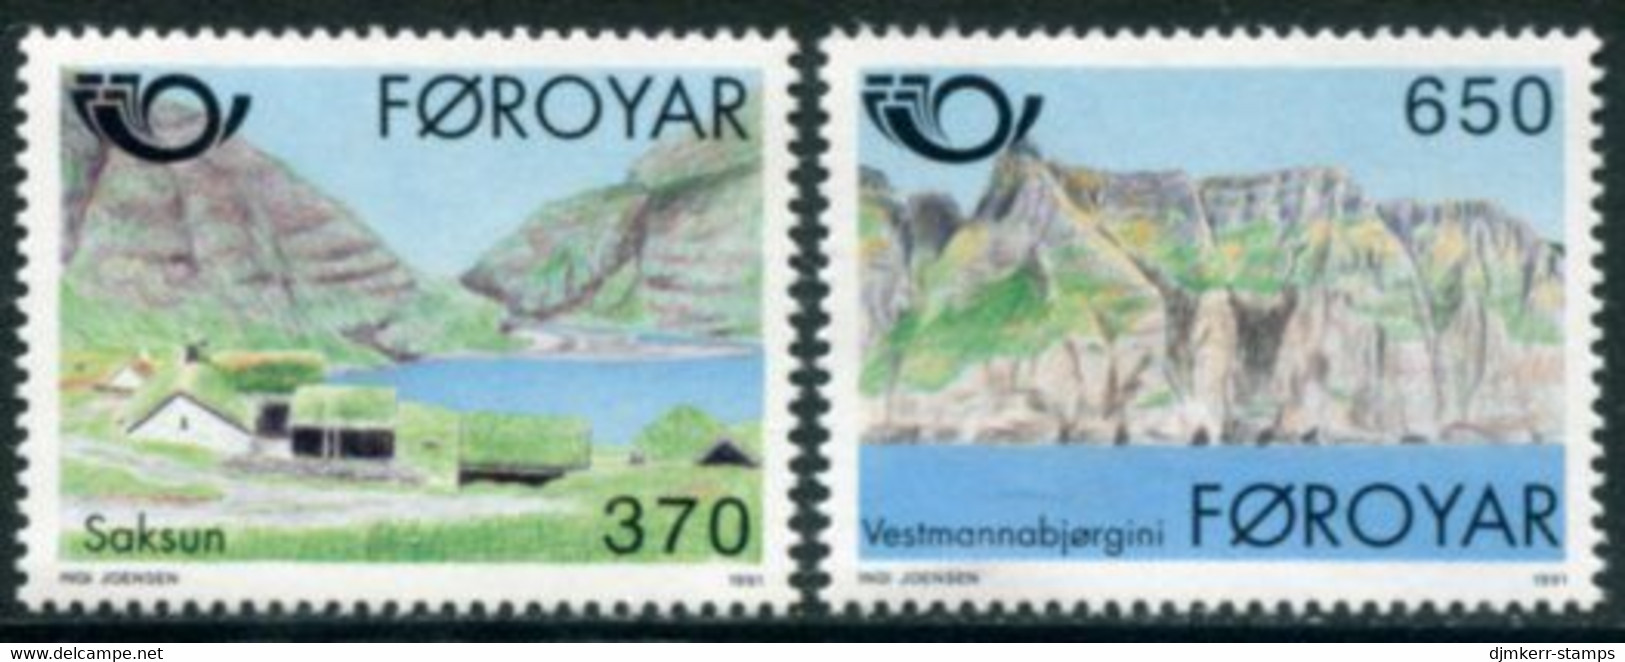 FAROE IS. 1991 Tourism MNH / **.  Michel 219-20 - Faroe Islands